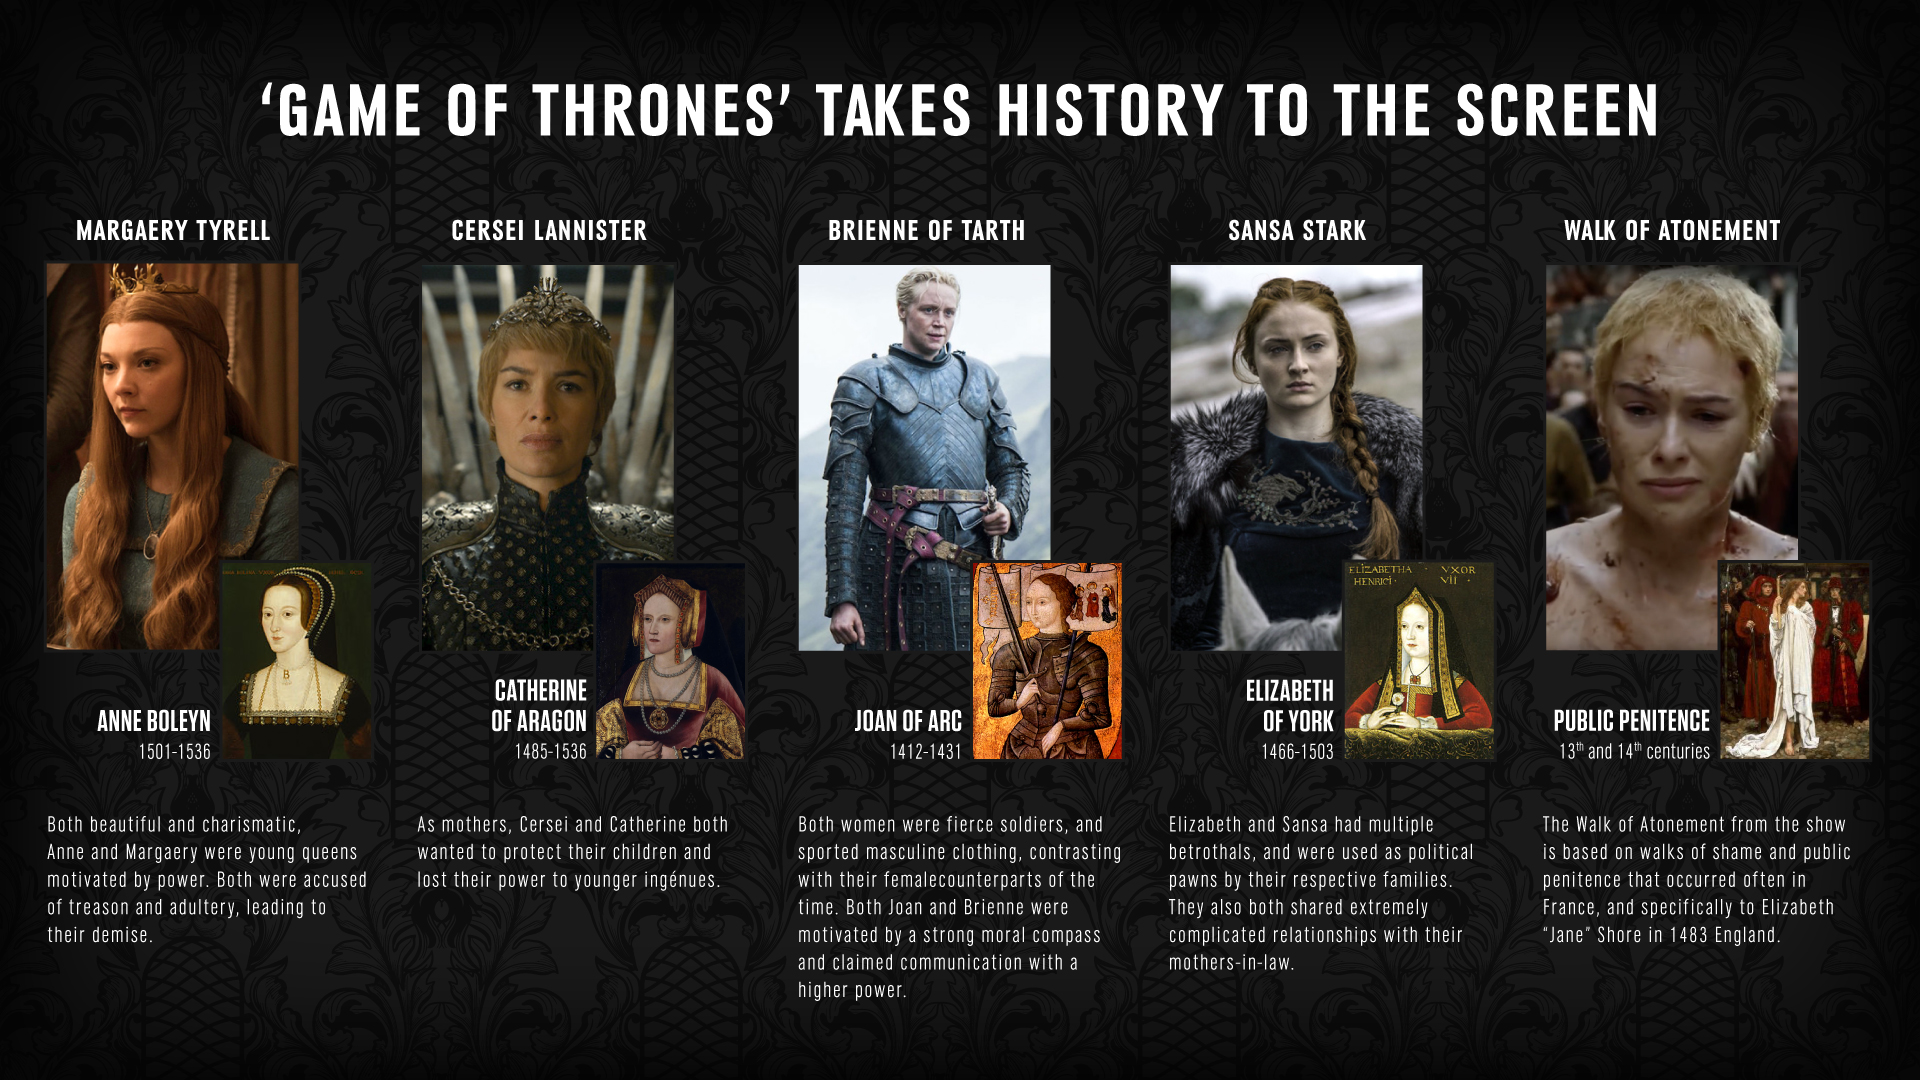 Những liên hệ lịch sử trong Game of Thrones chứa đựng những bí mật thú vị về thế giới Westeros và các vị vua. Hãy xem hình ảnh liên quan để khám phá sự liên kết đó và tìm hiểu thêm về mọi điều bí ẩn của Game of Thrones. Đây sẽ là một chuyến hành trình thú vị cho bạn đấy!